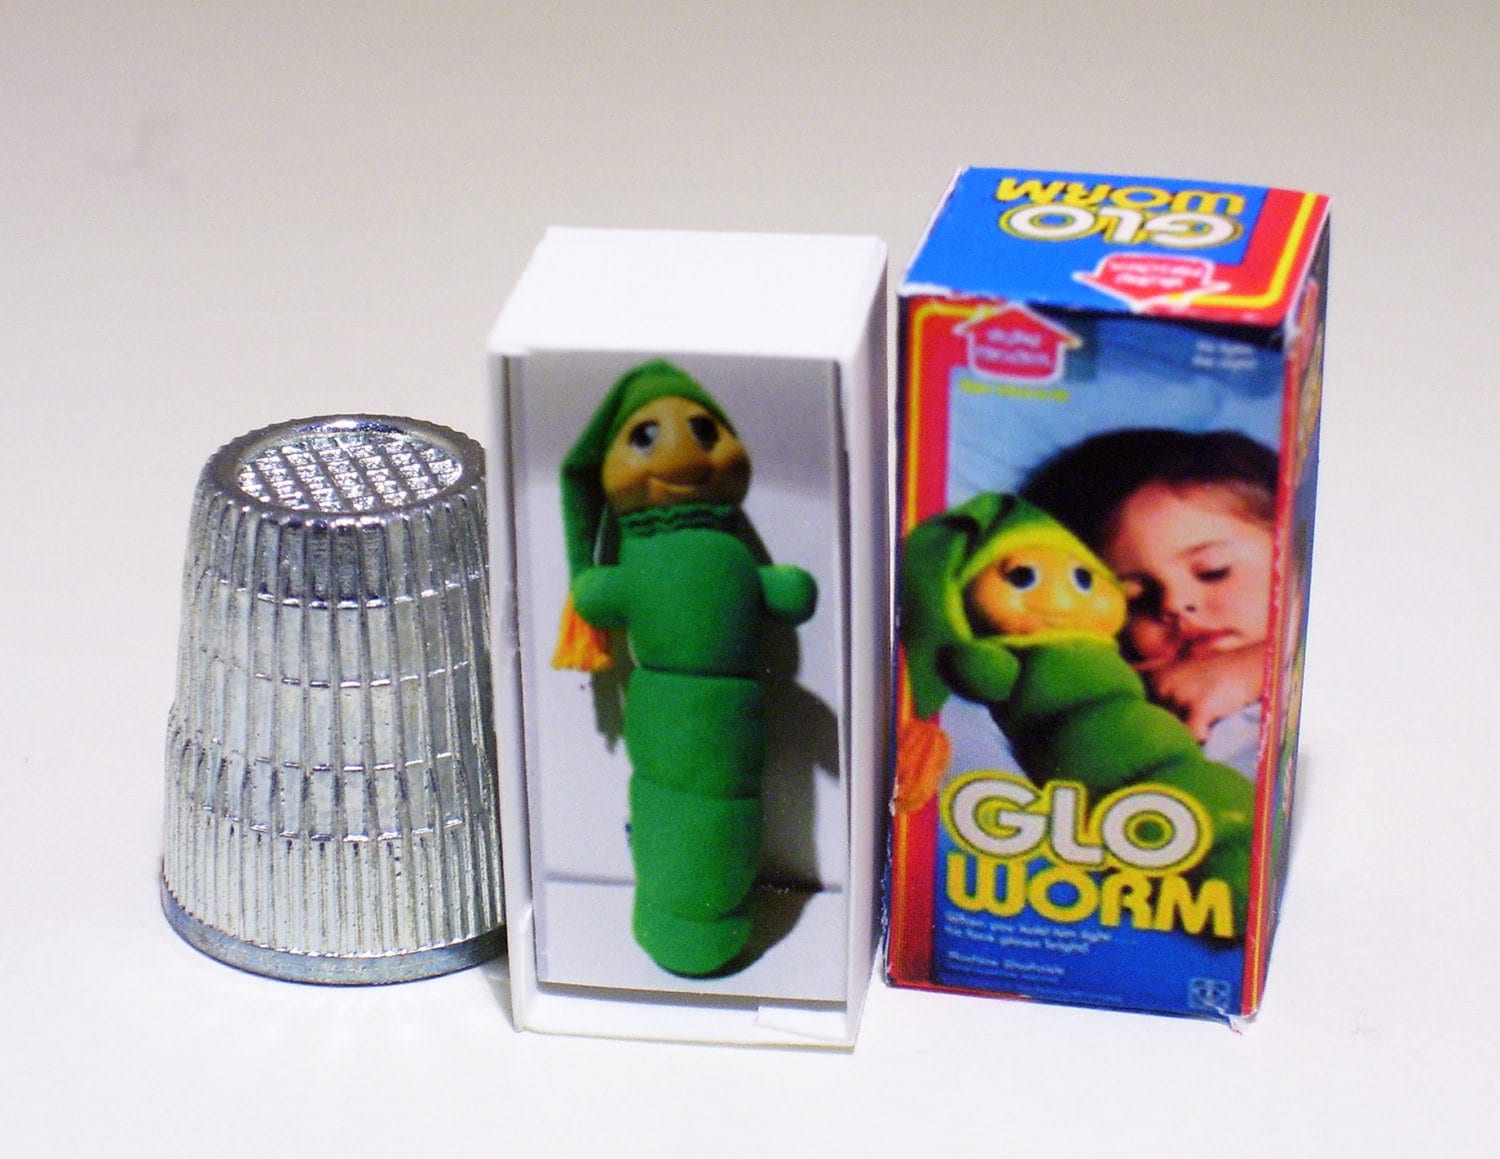 Toy glow worm -  España